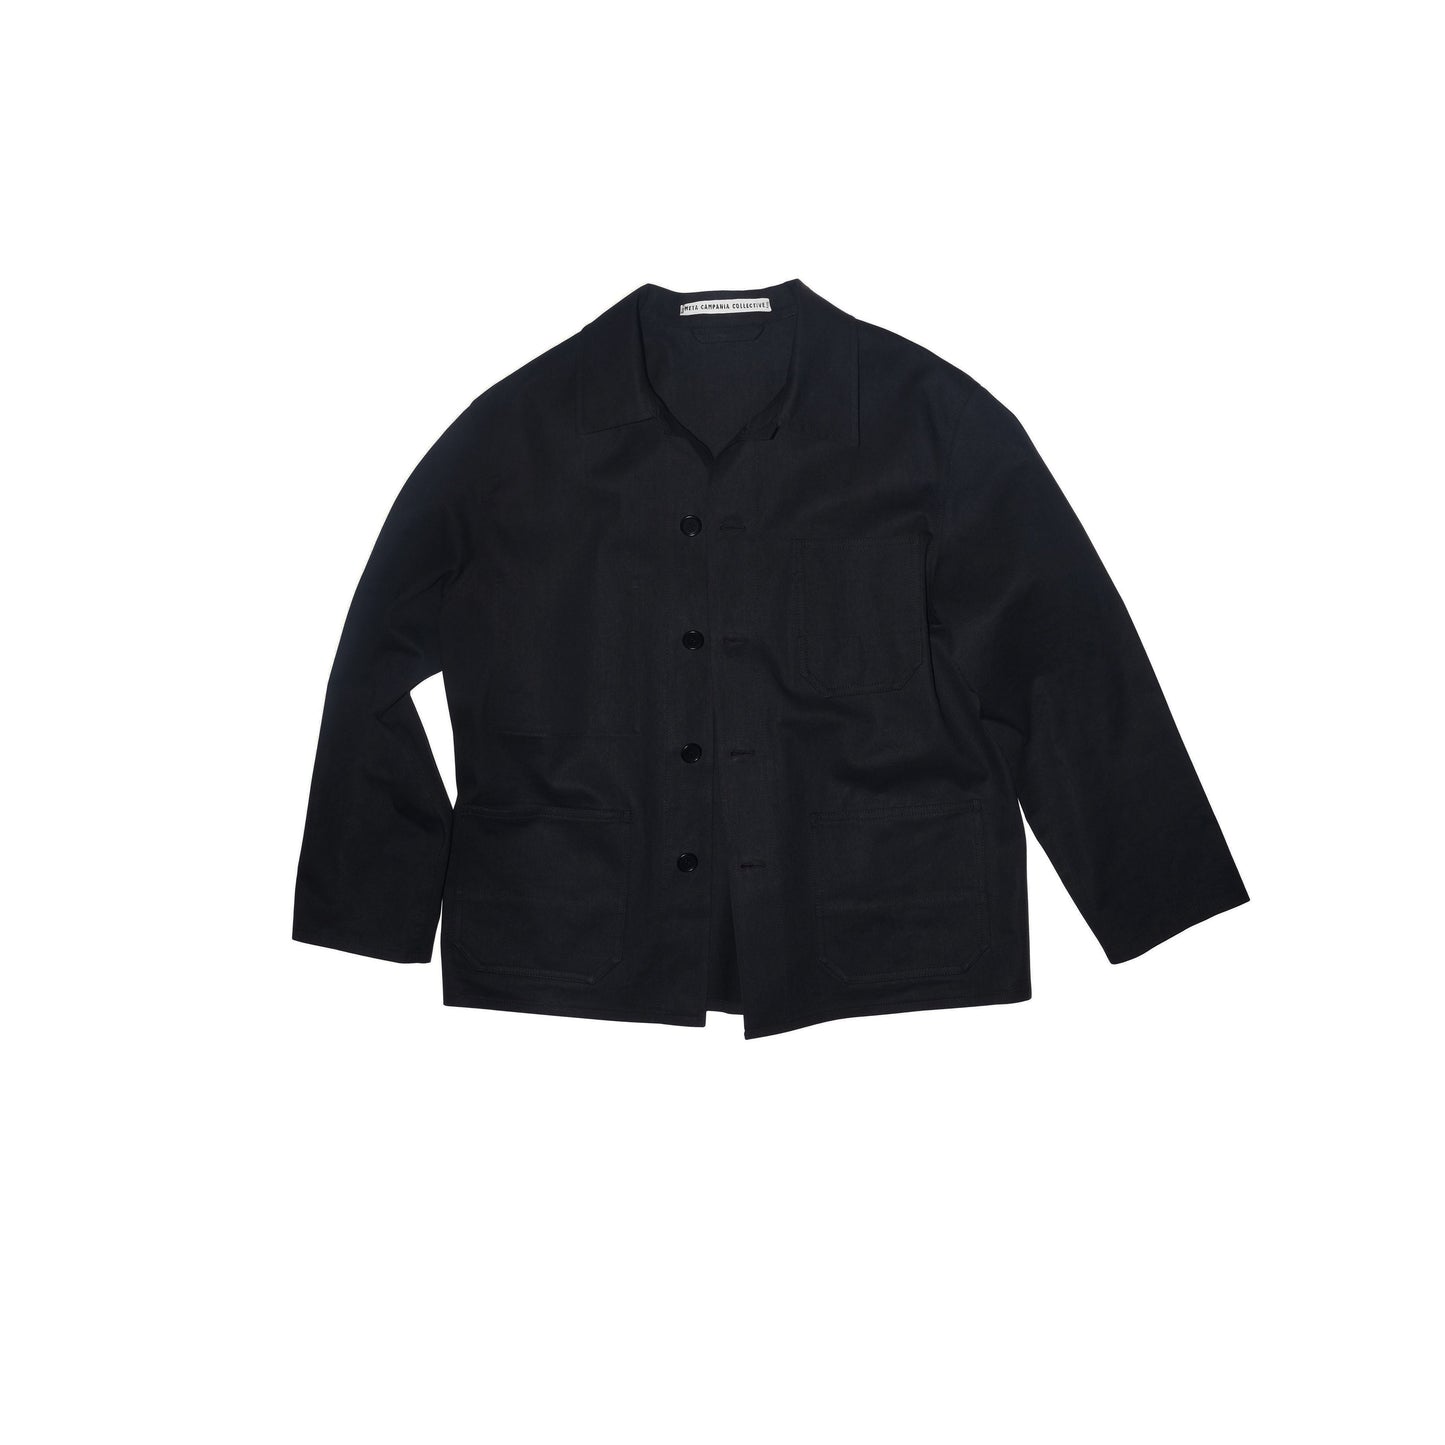 Bill Unlined Workwear Jacket Black